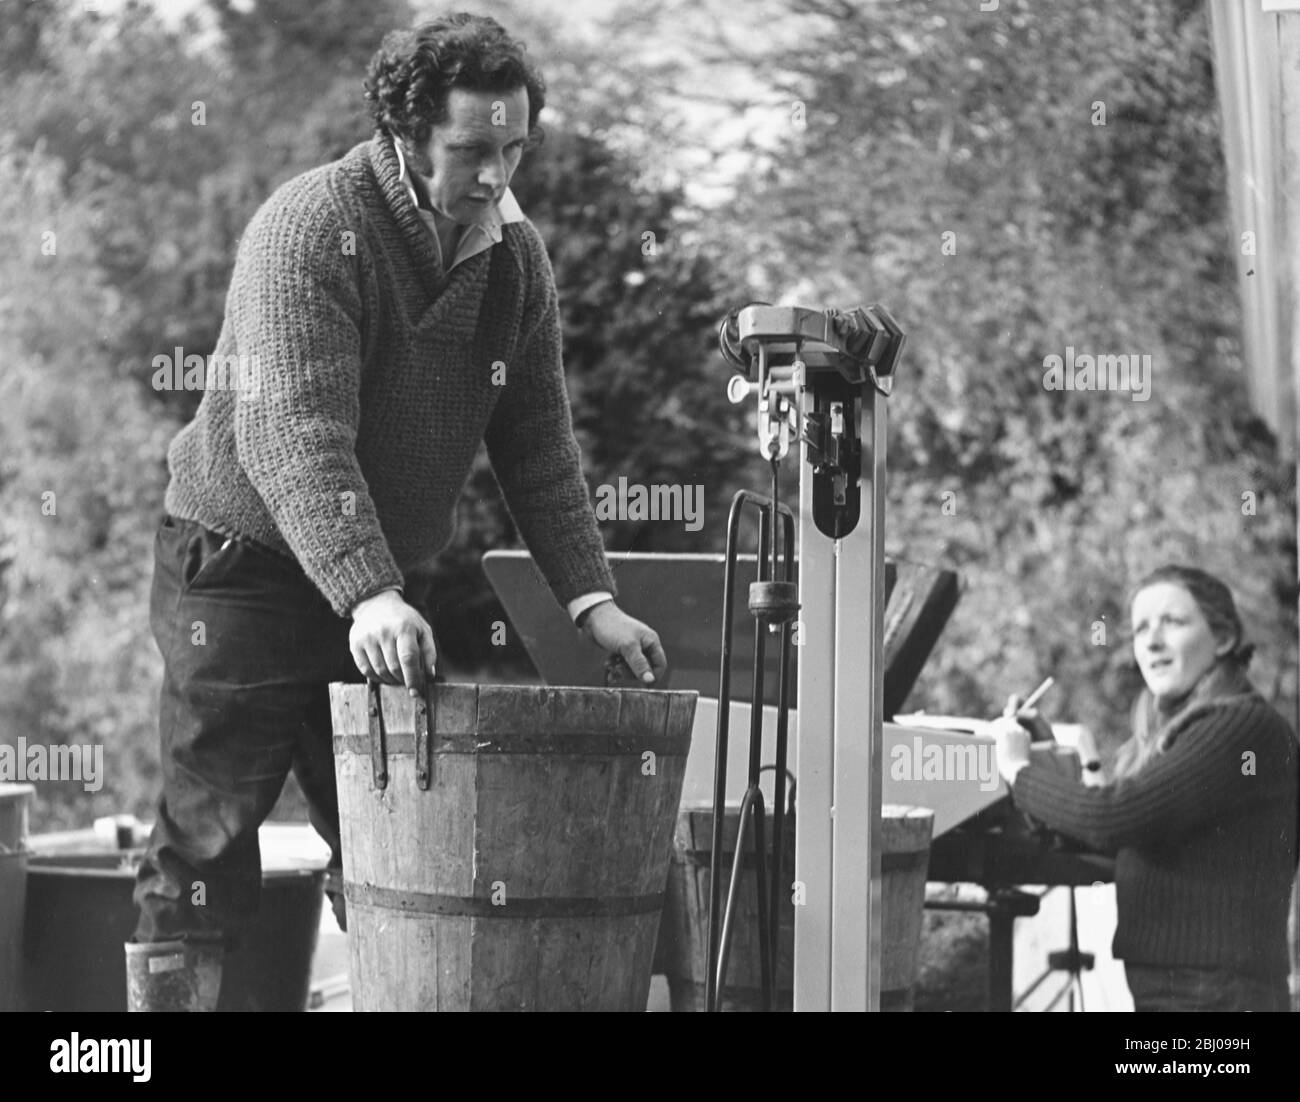 Muestra fotos: Bill Carcary, el gerente escocés de Hambledon Vineyard. Pesando las uvas. Por cutesy de los propietarios. Foto de stock